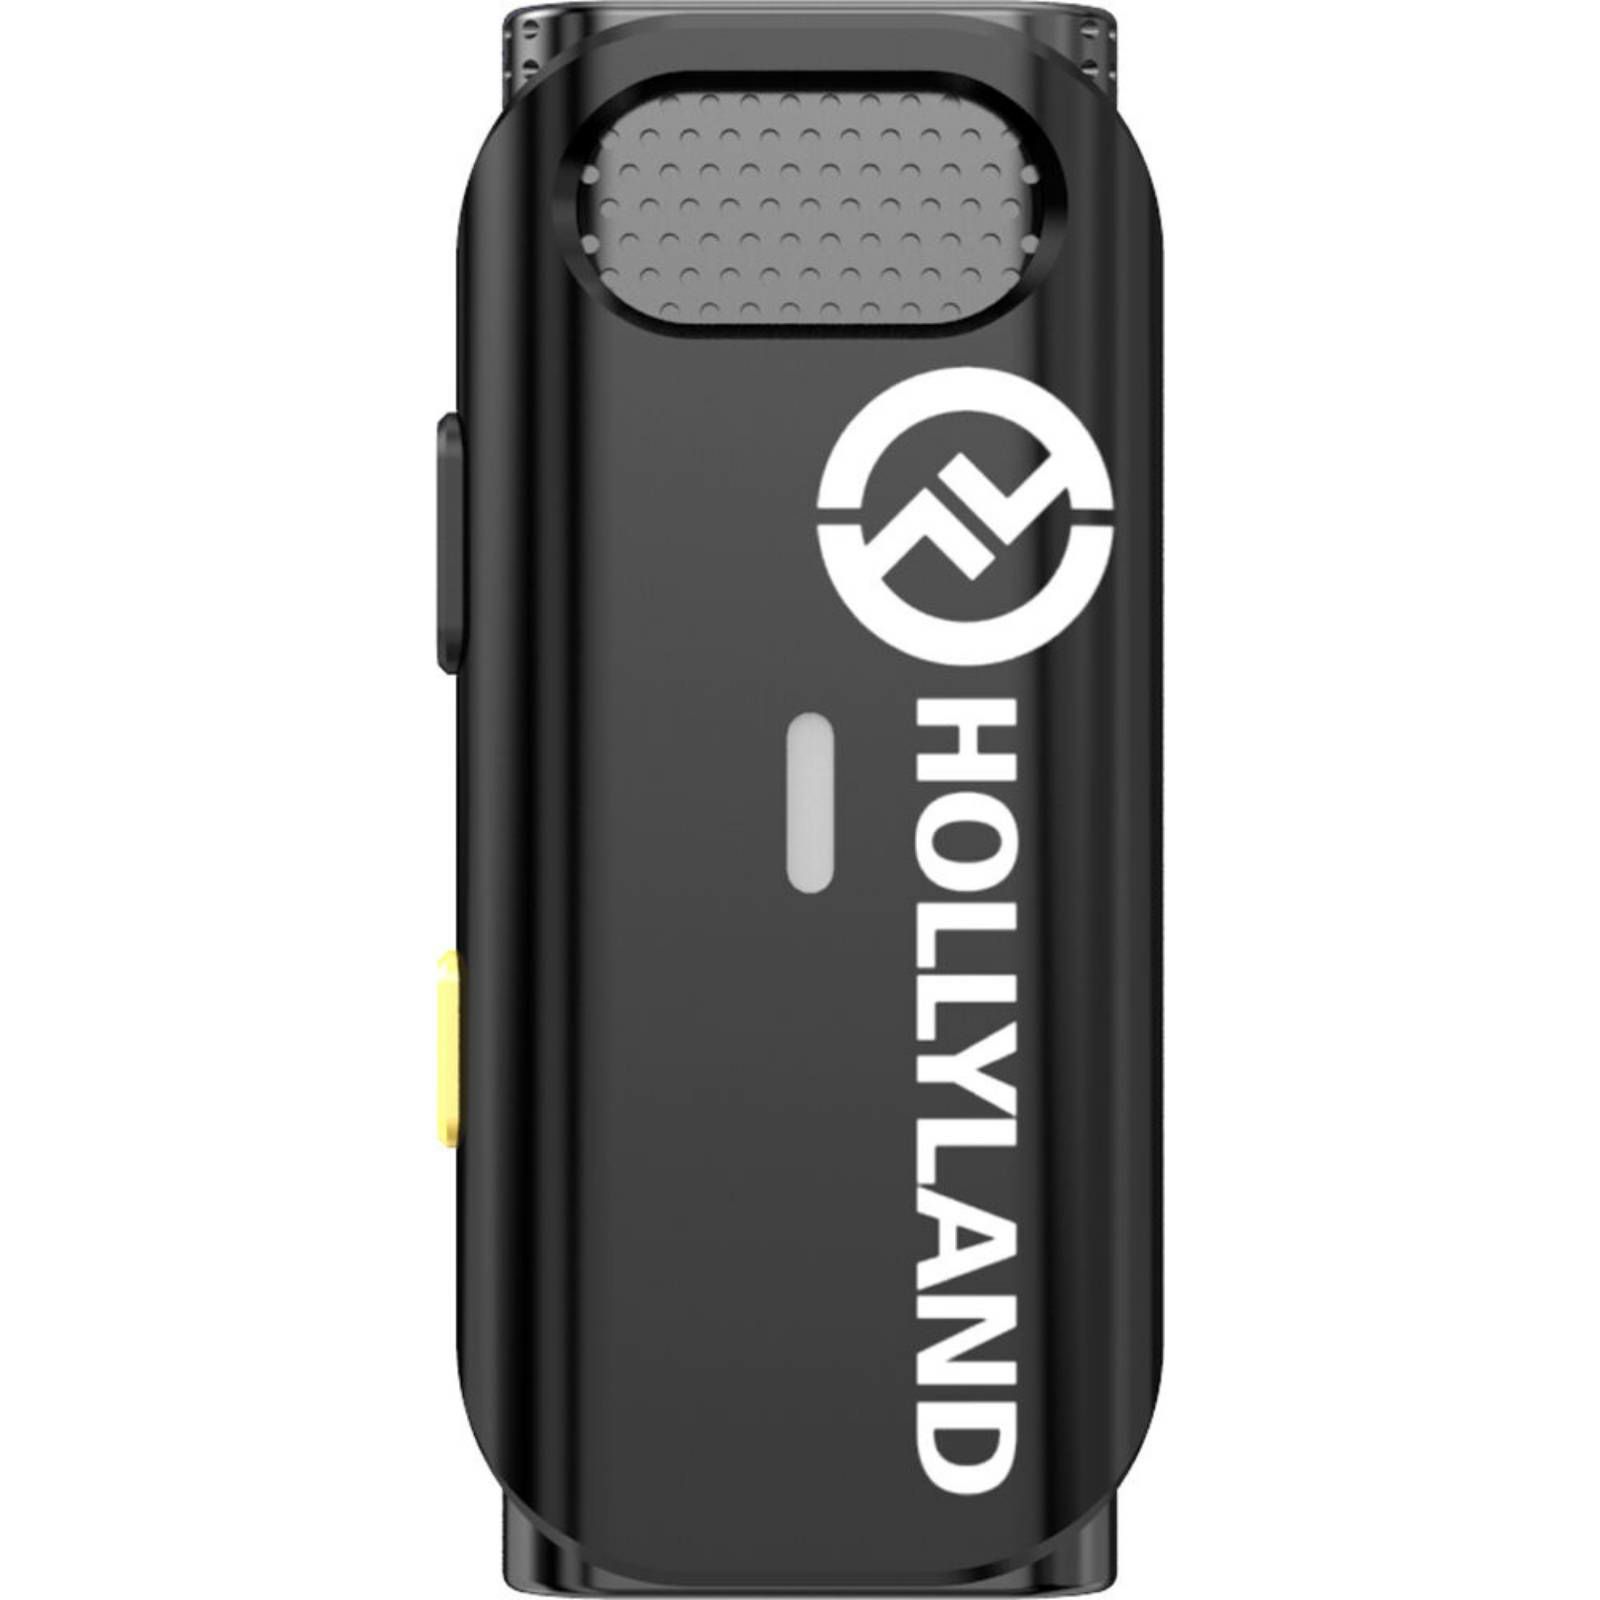 Hollyland HL-Lark C1 Duo bežični mikforon za iPhone